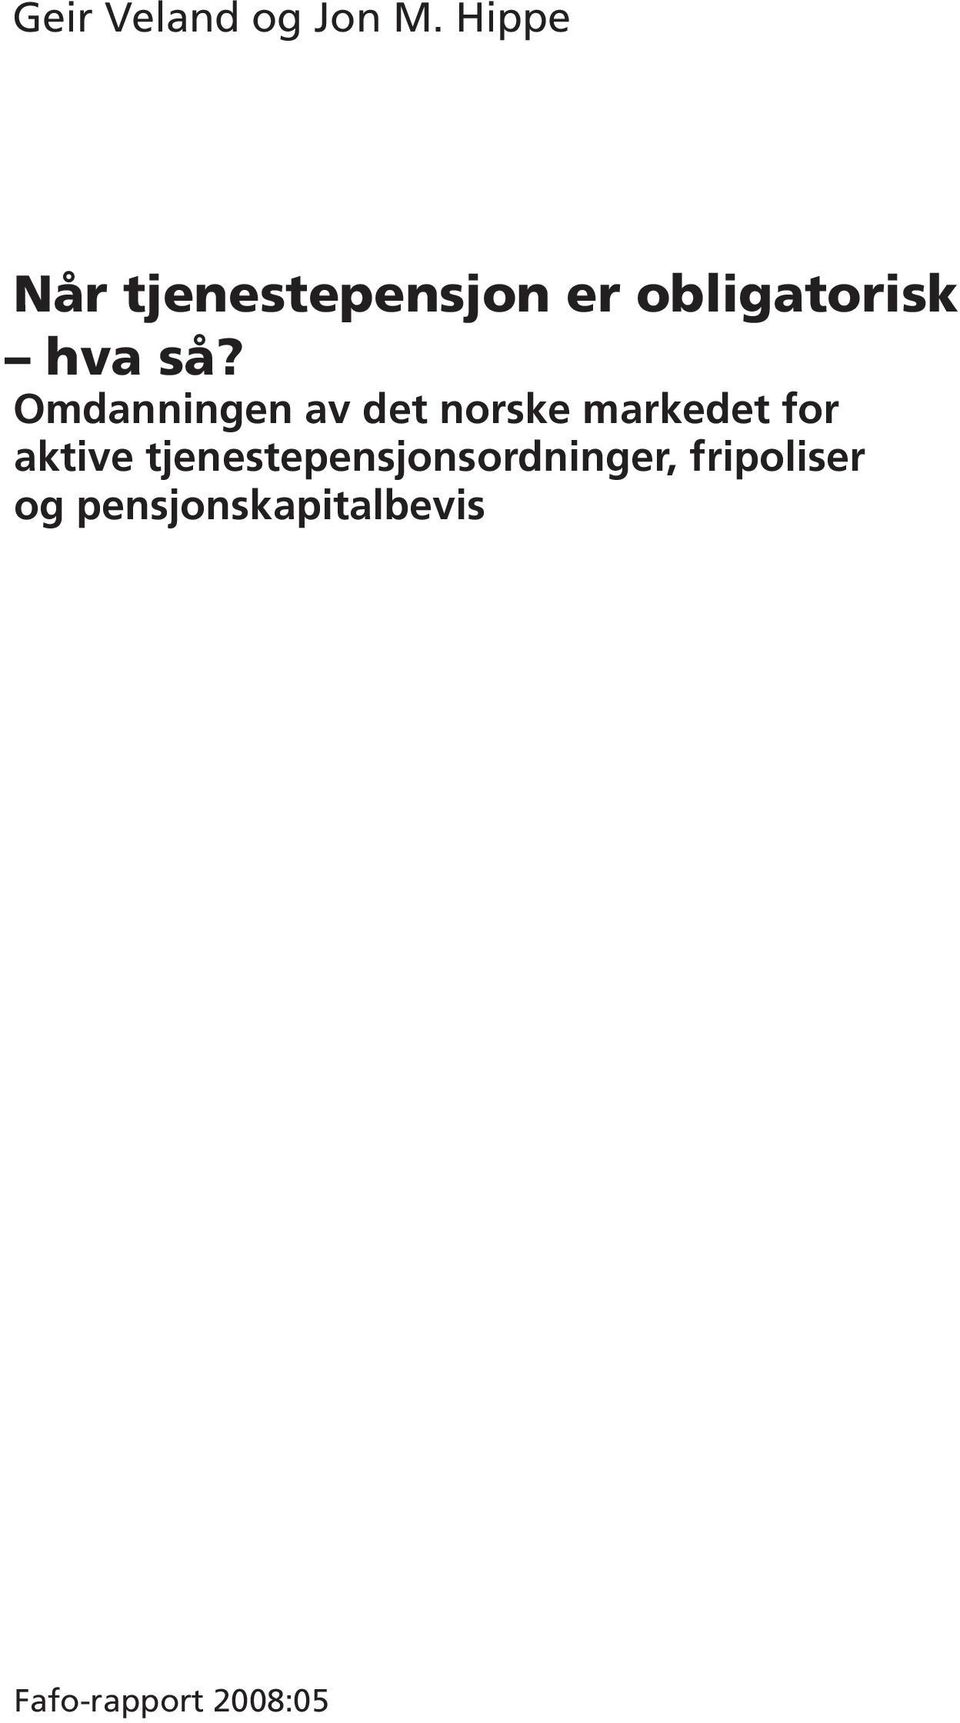 Omdanningen av det norske markedet for aktive